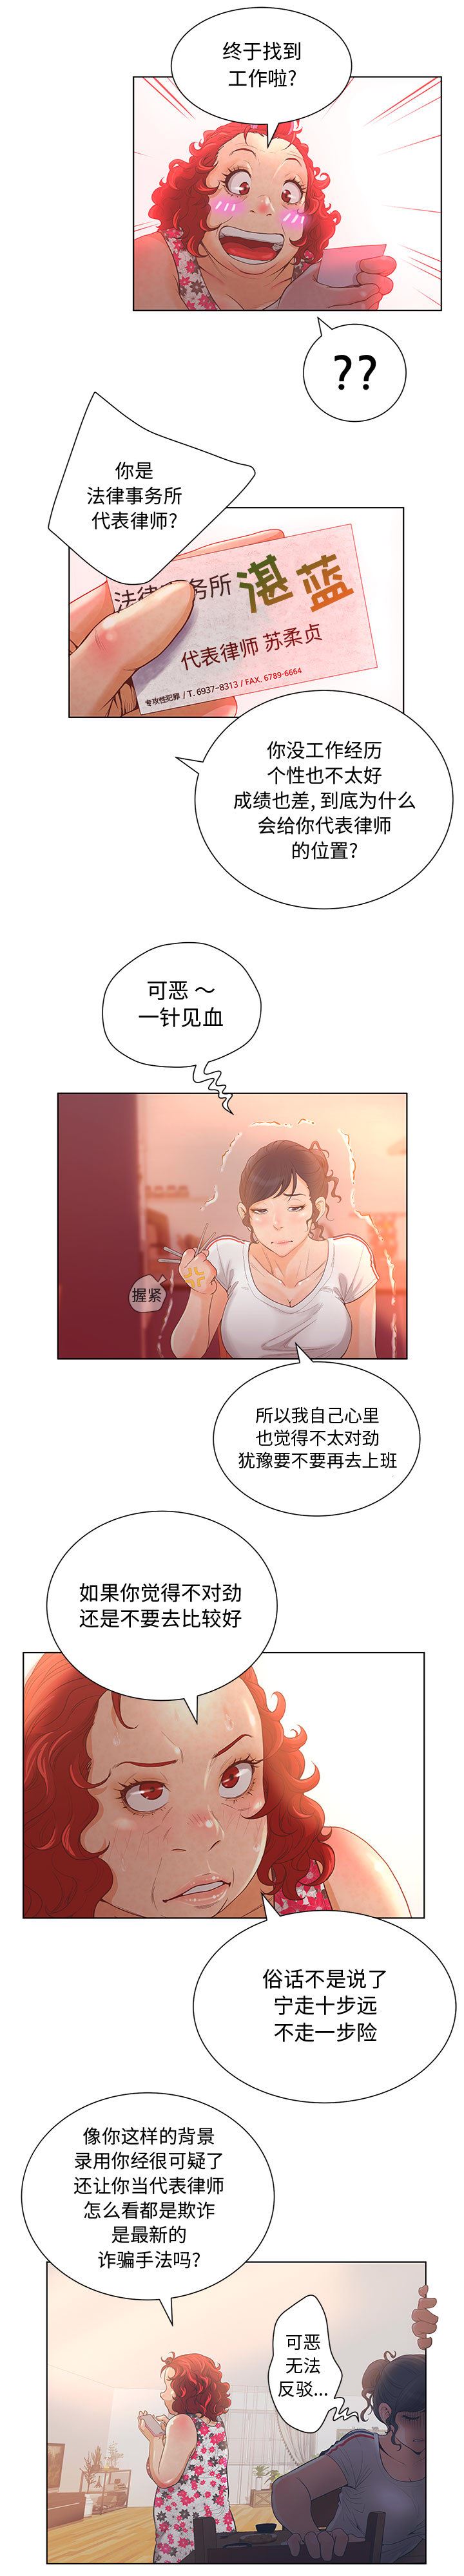 韩国污漫画 誣告 2 13